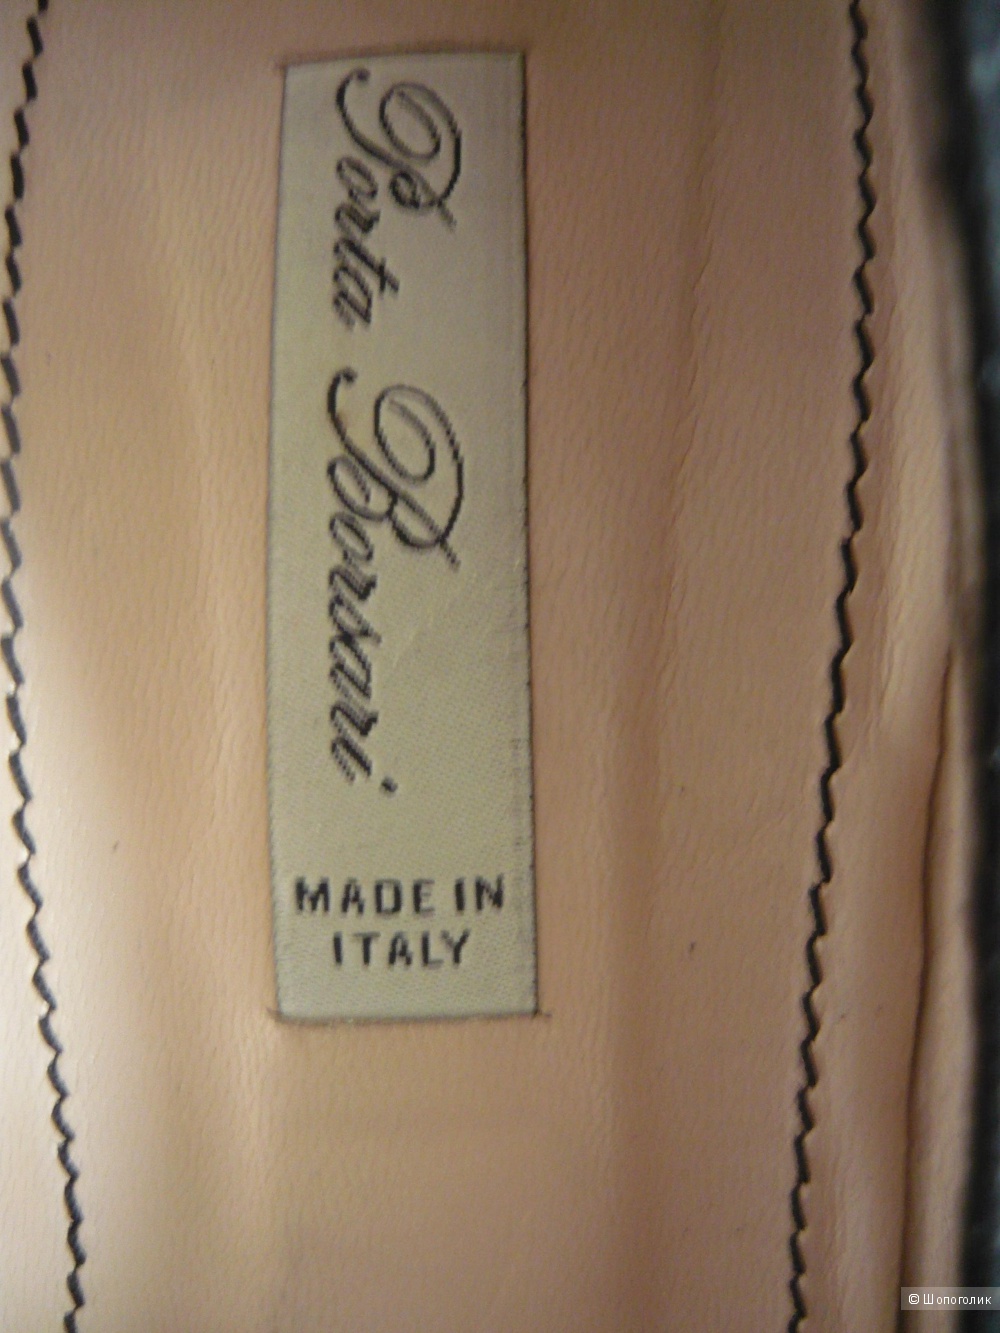 Классические черный замшевые туфли, PORTA BORSARI (Италия), размер 37,5.